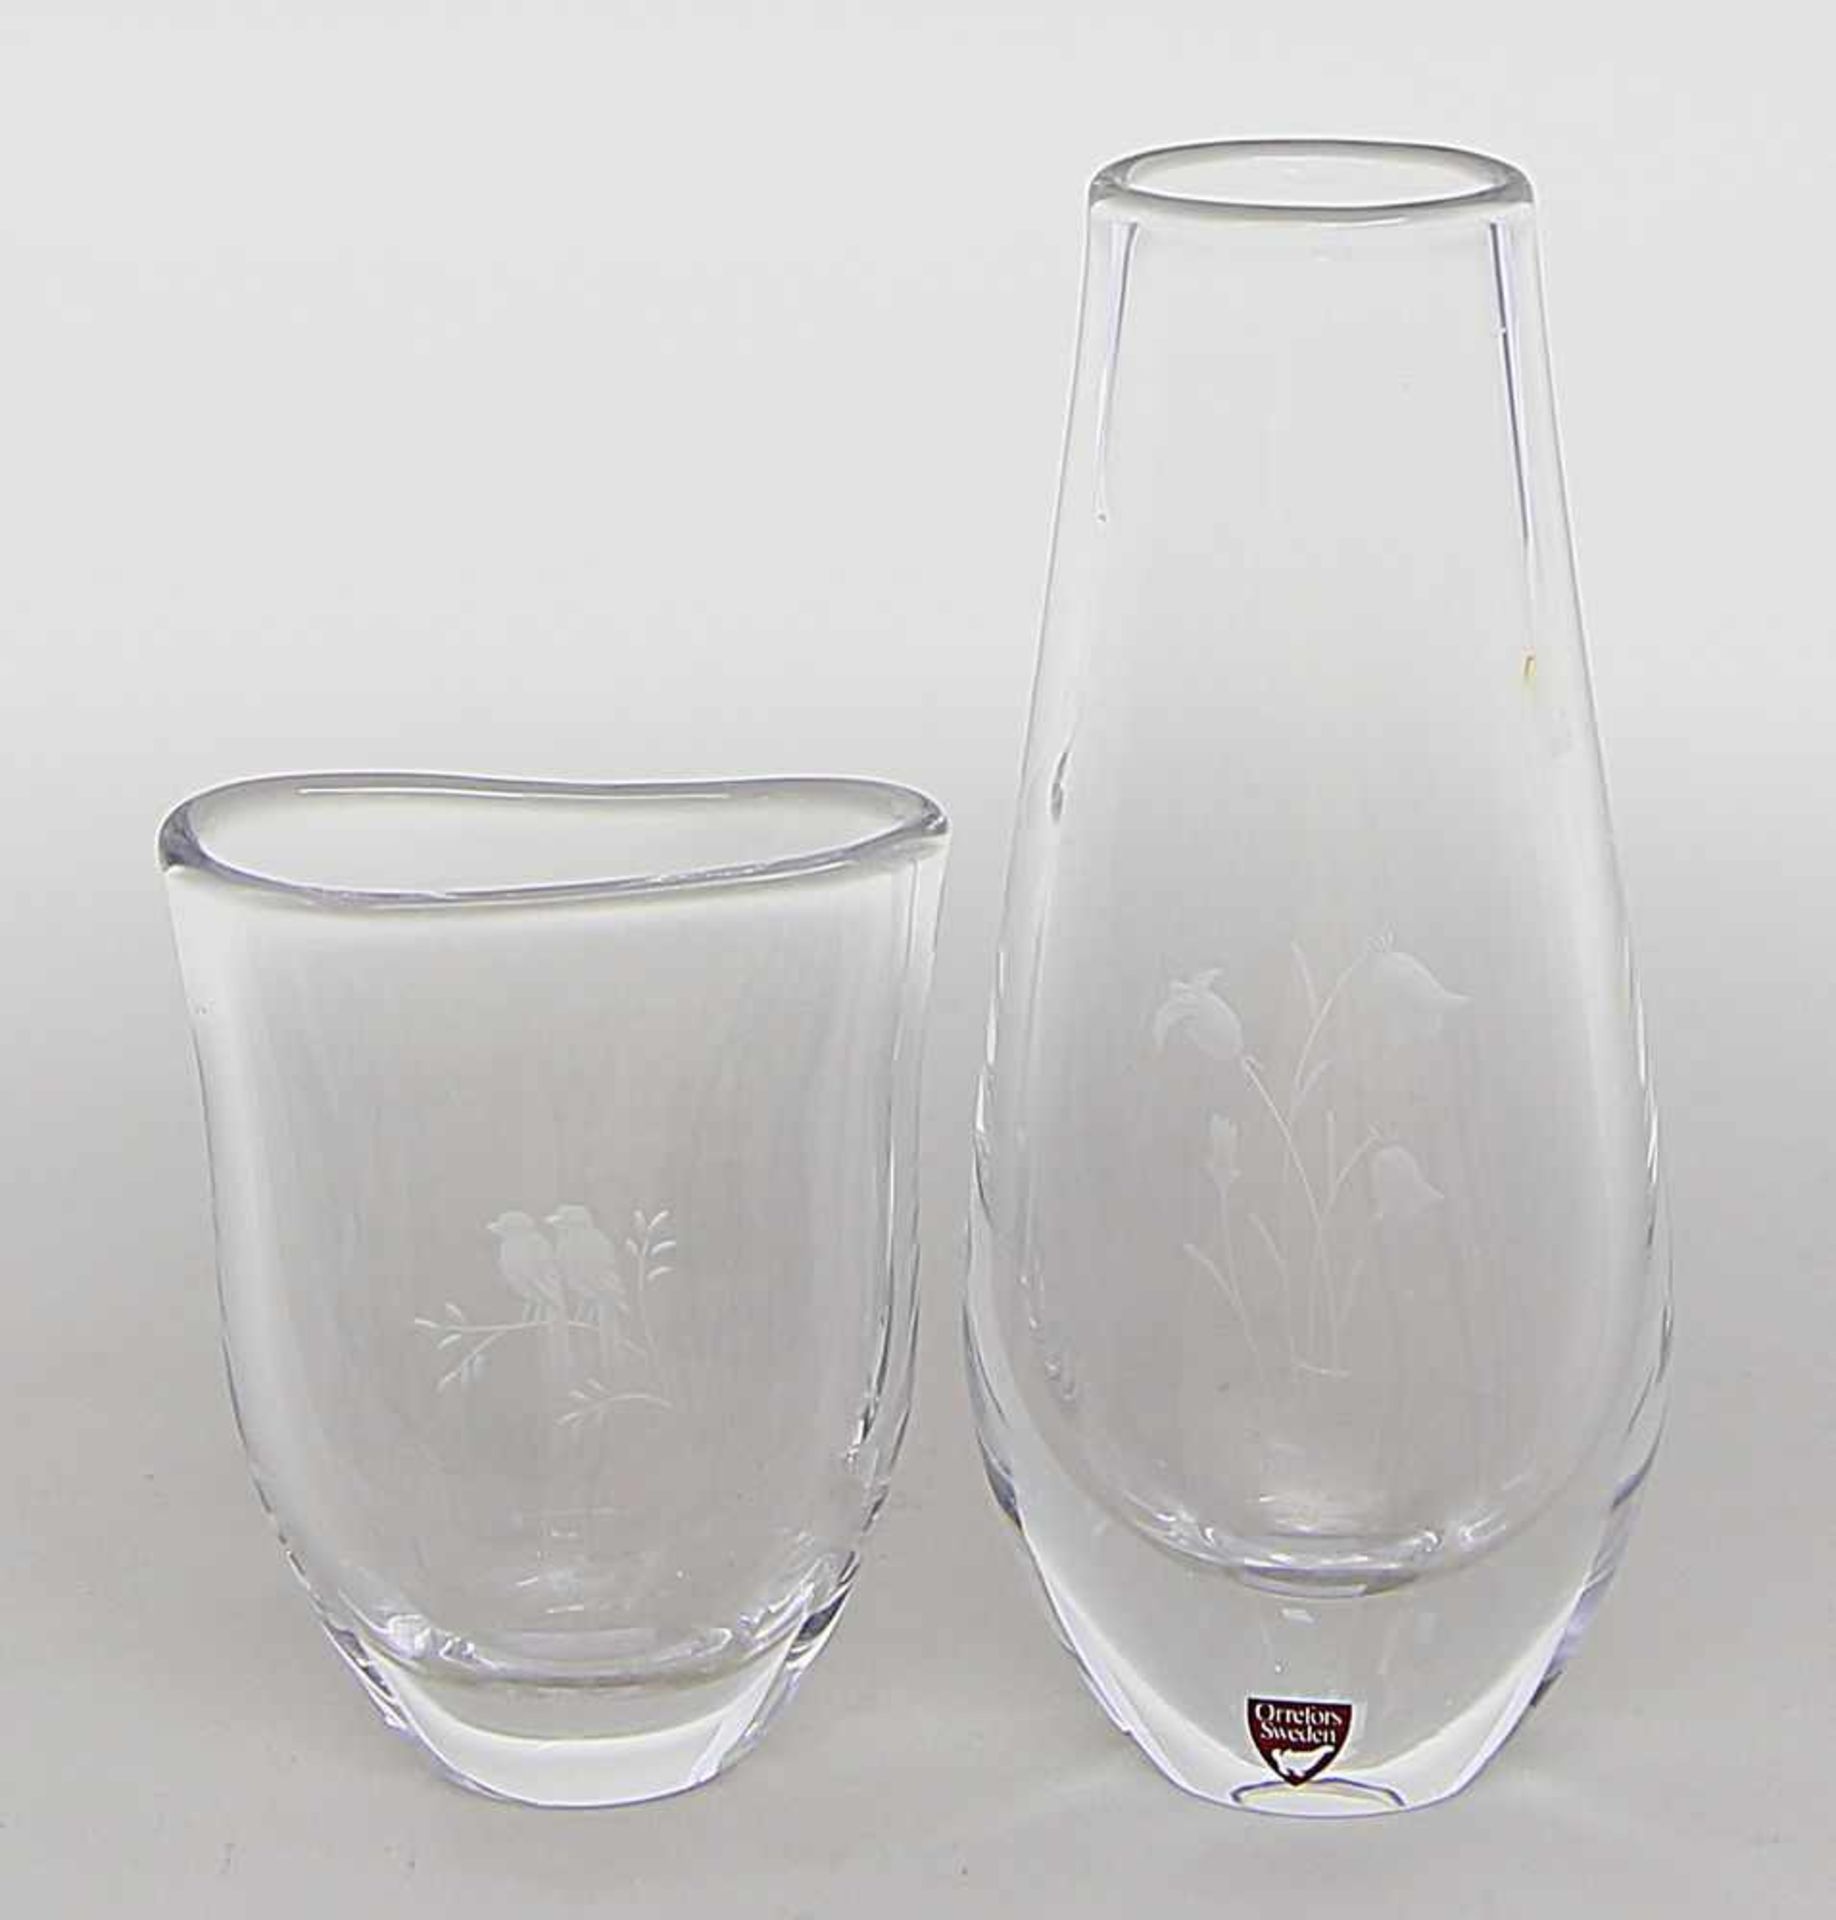 Zwei Vasen.Farbloses Kristall. Verschiedene Formen, schauseitig stilisierte Blumen bzw. Vogelpaar